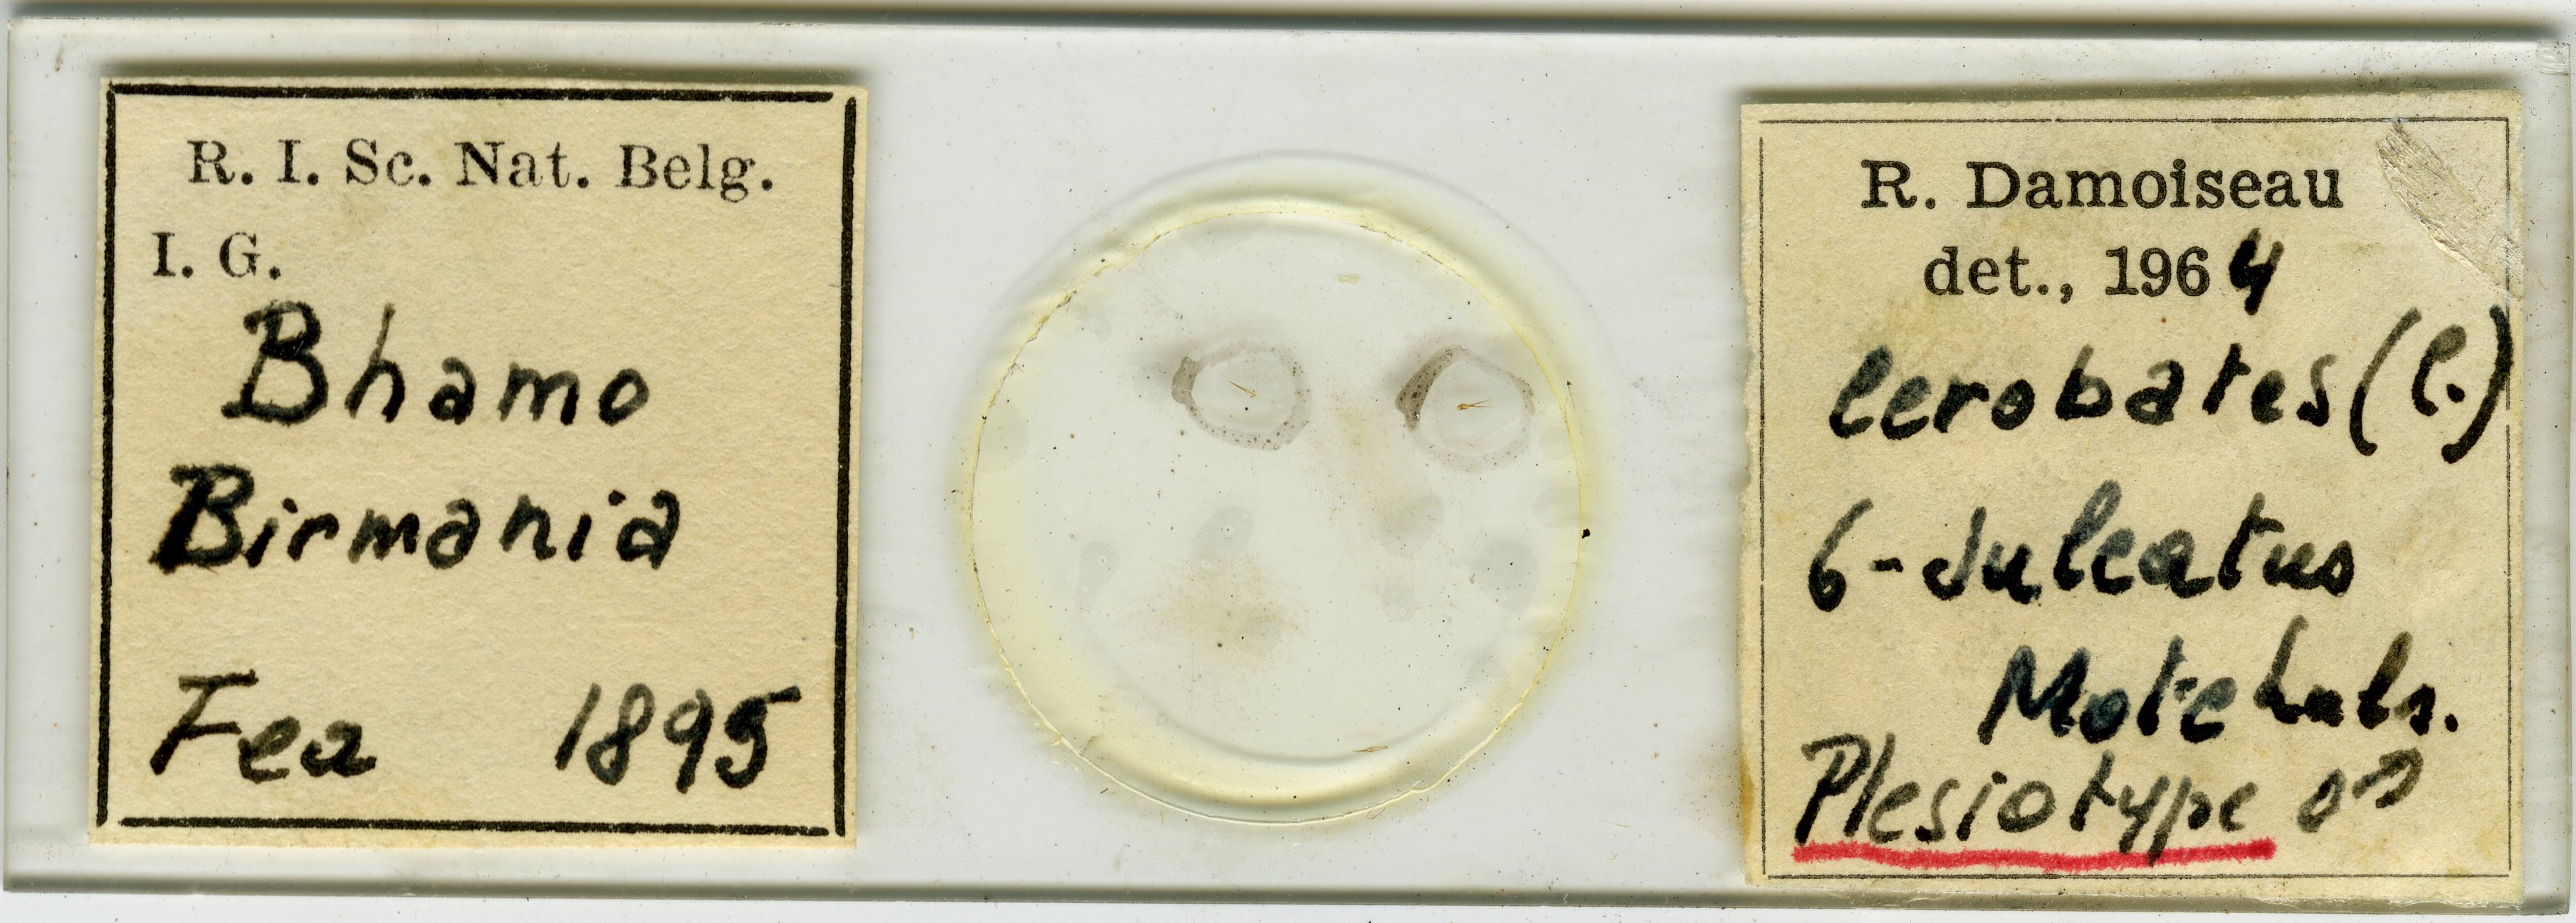 Cerobates (Cerobates) sexsulcatus plt Microscopic preparation.jpg